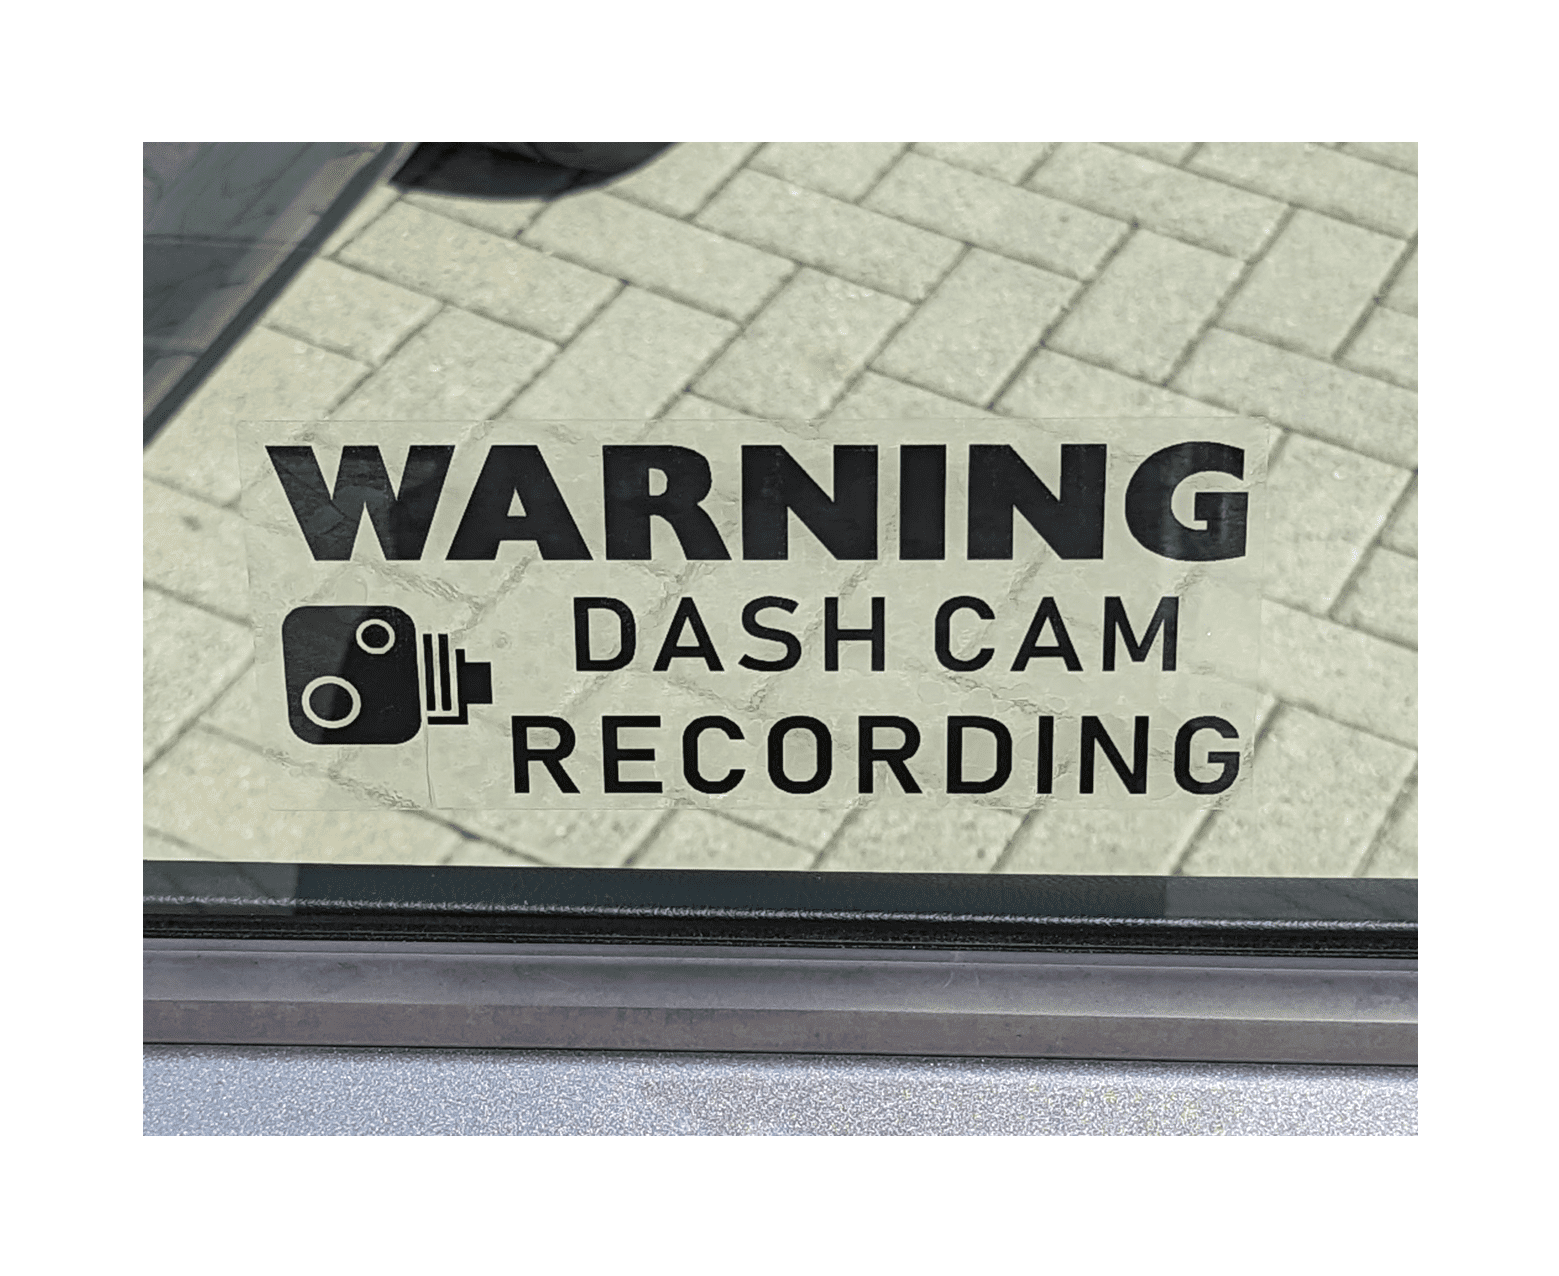 Naklejka samochodowa OSTRZEŻENIE Dashcam Recording czarna - 203x85mm - wewnątrz okna